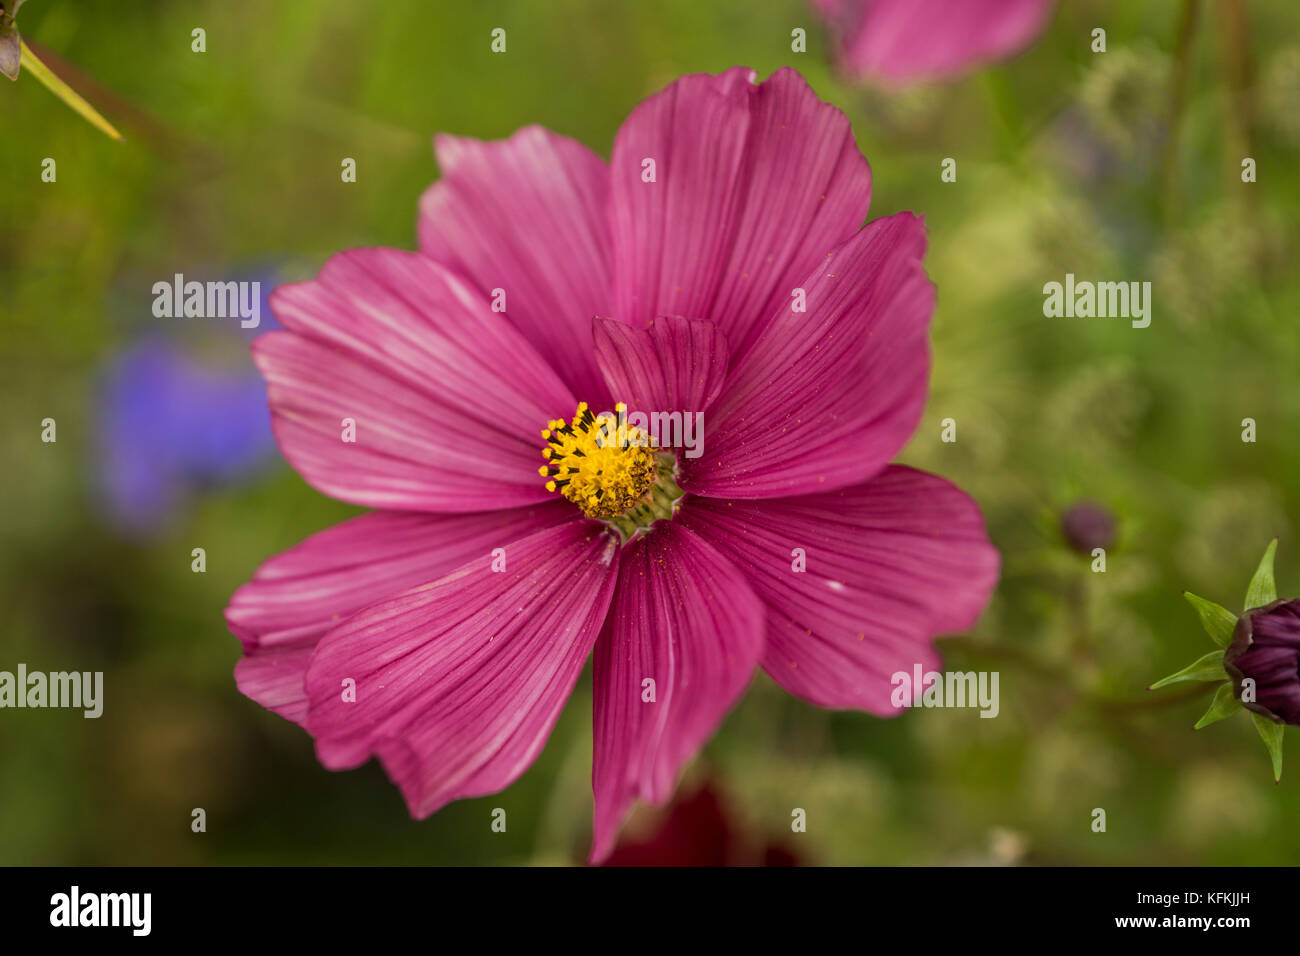 Bel fiore con petali di rosa Foto Stock